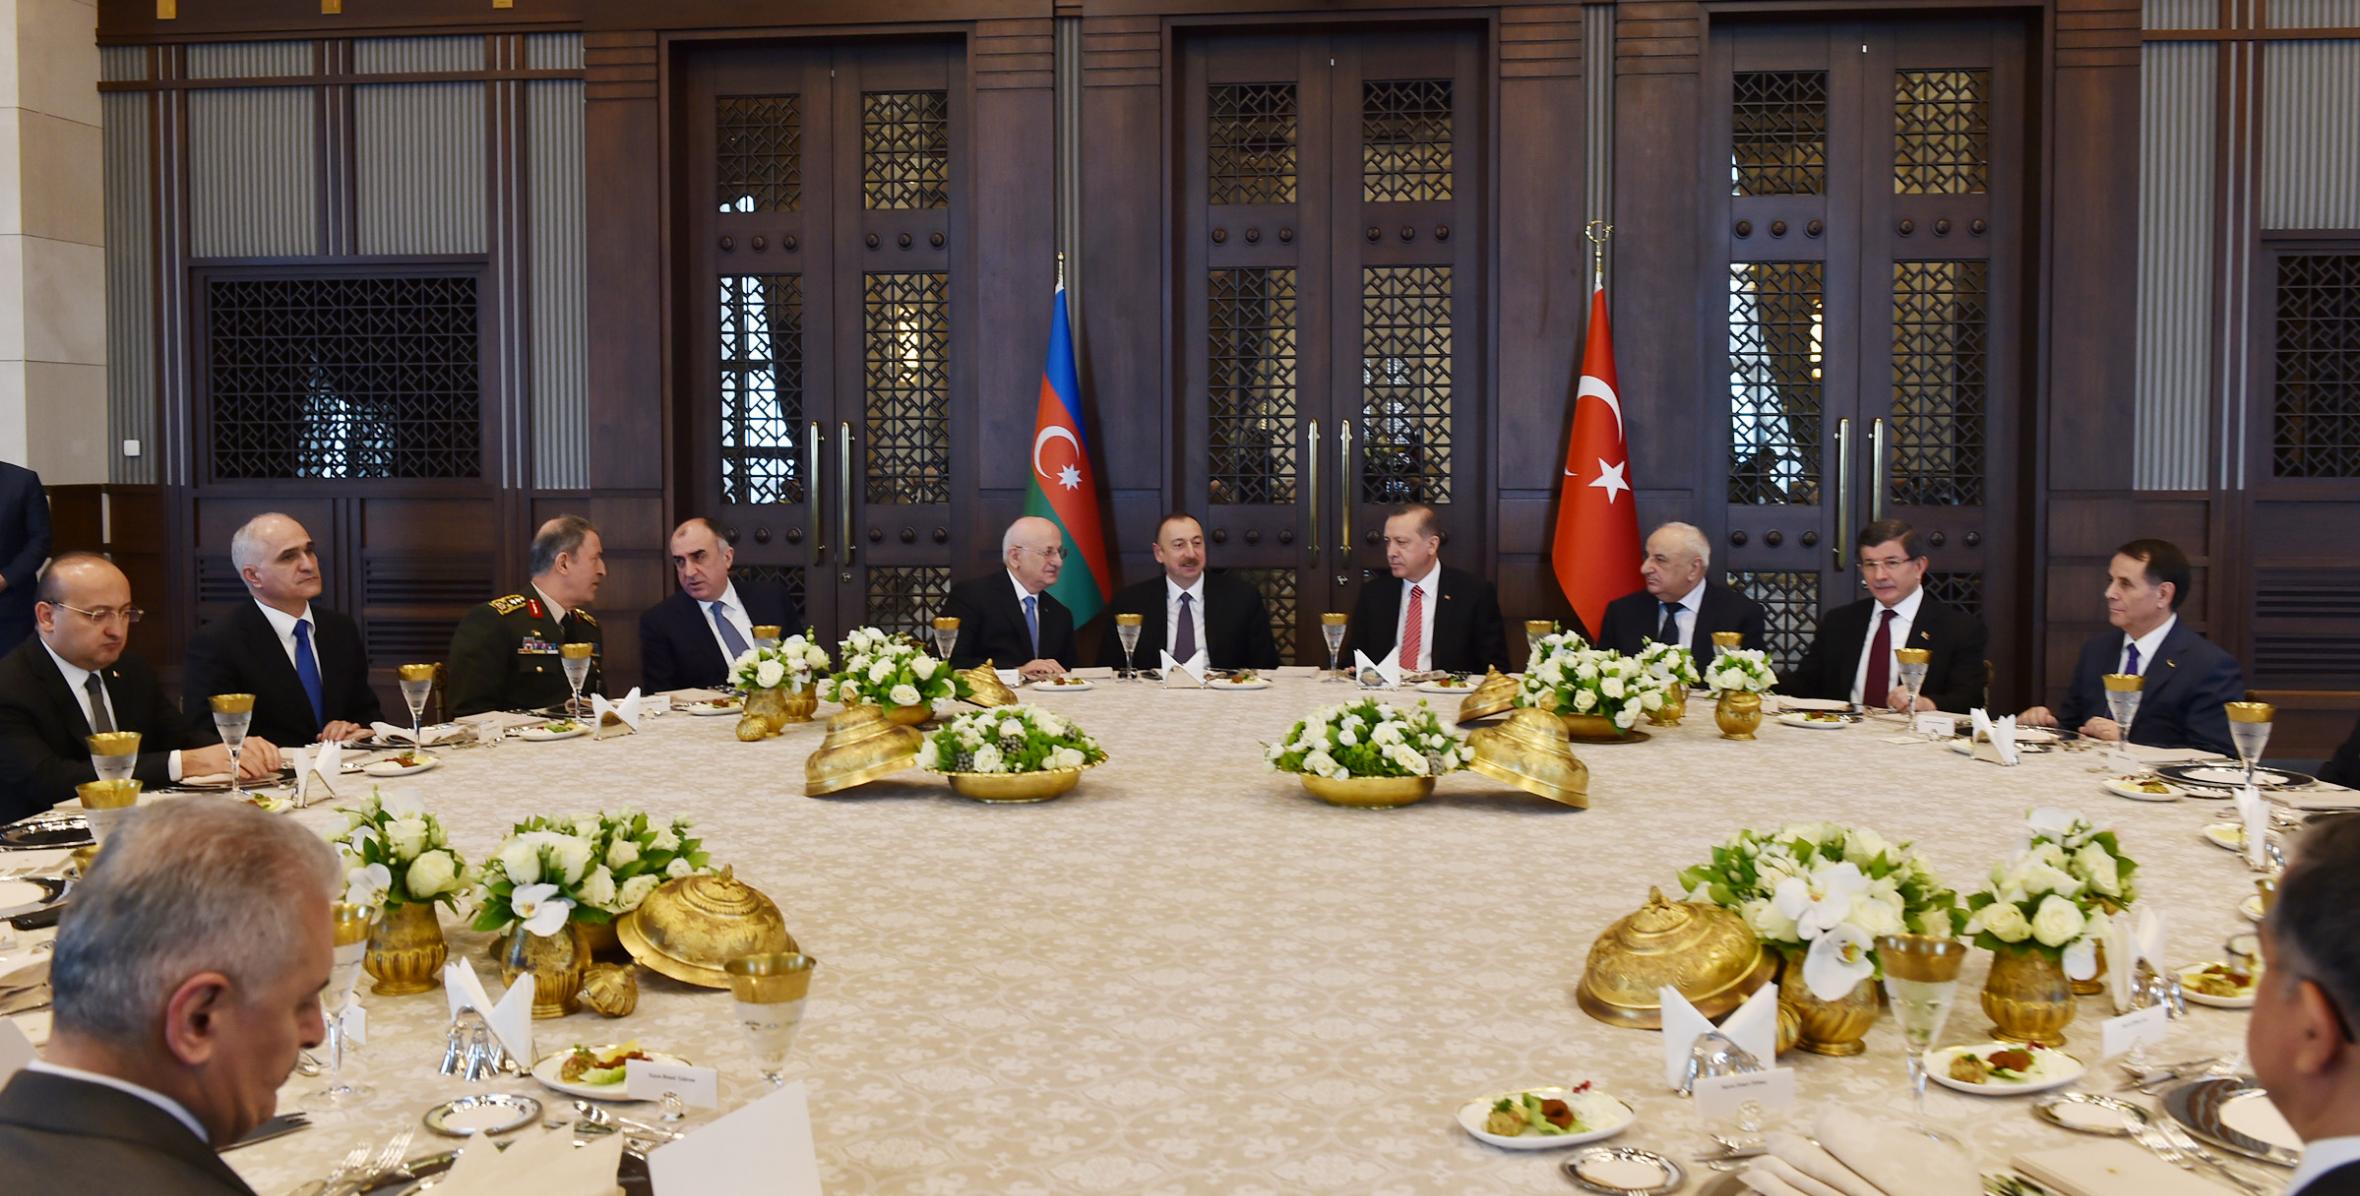 От имени Президента Турецкой Республики Реджепа Тайипа Эрдогана был устроен прием в честь Ильхама Алиева